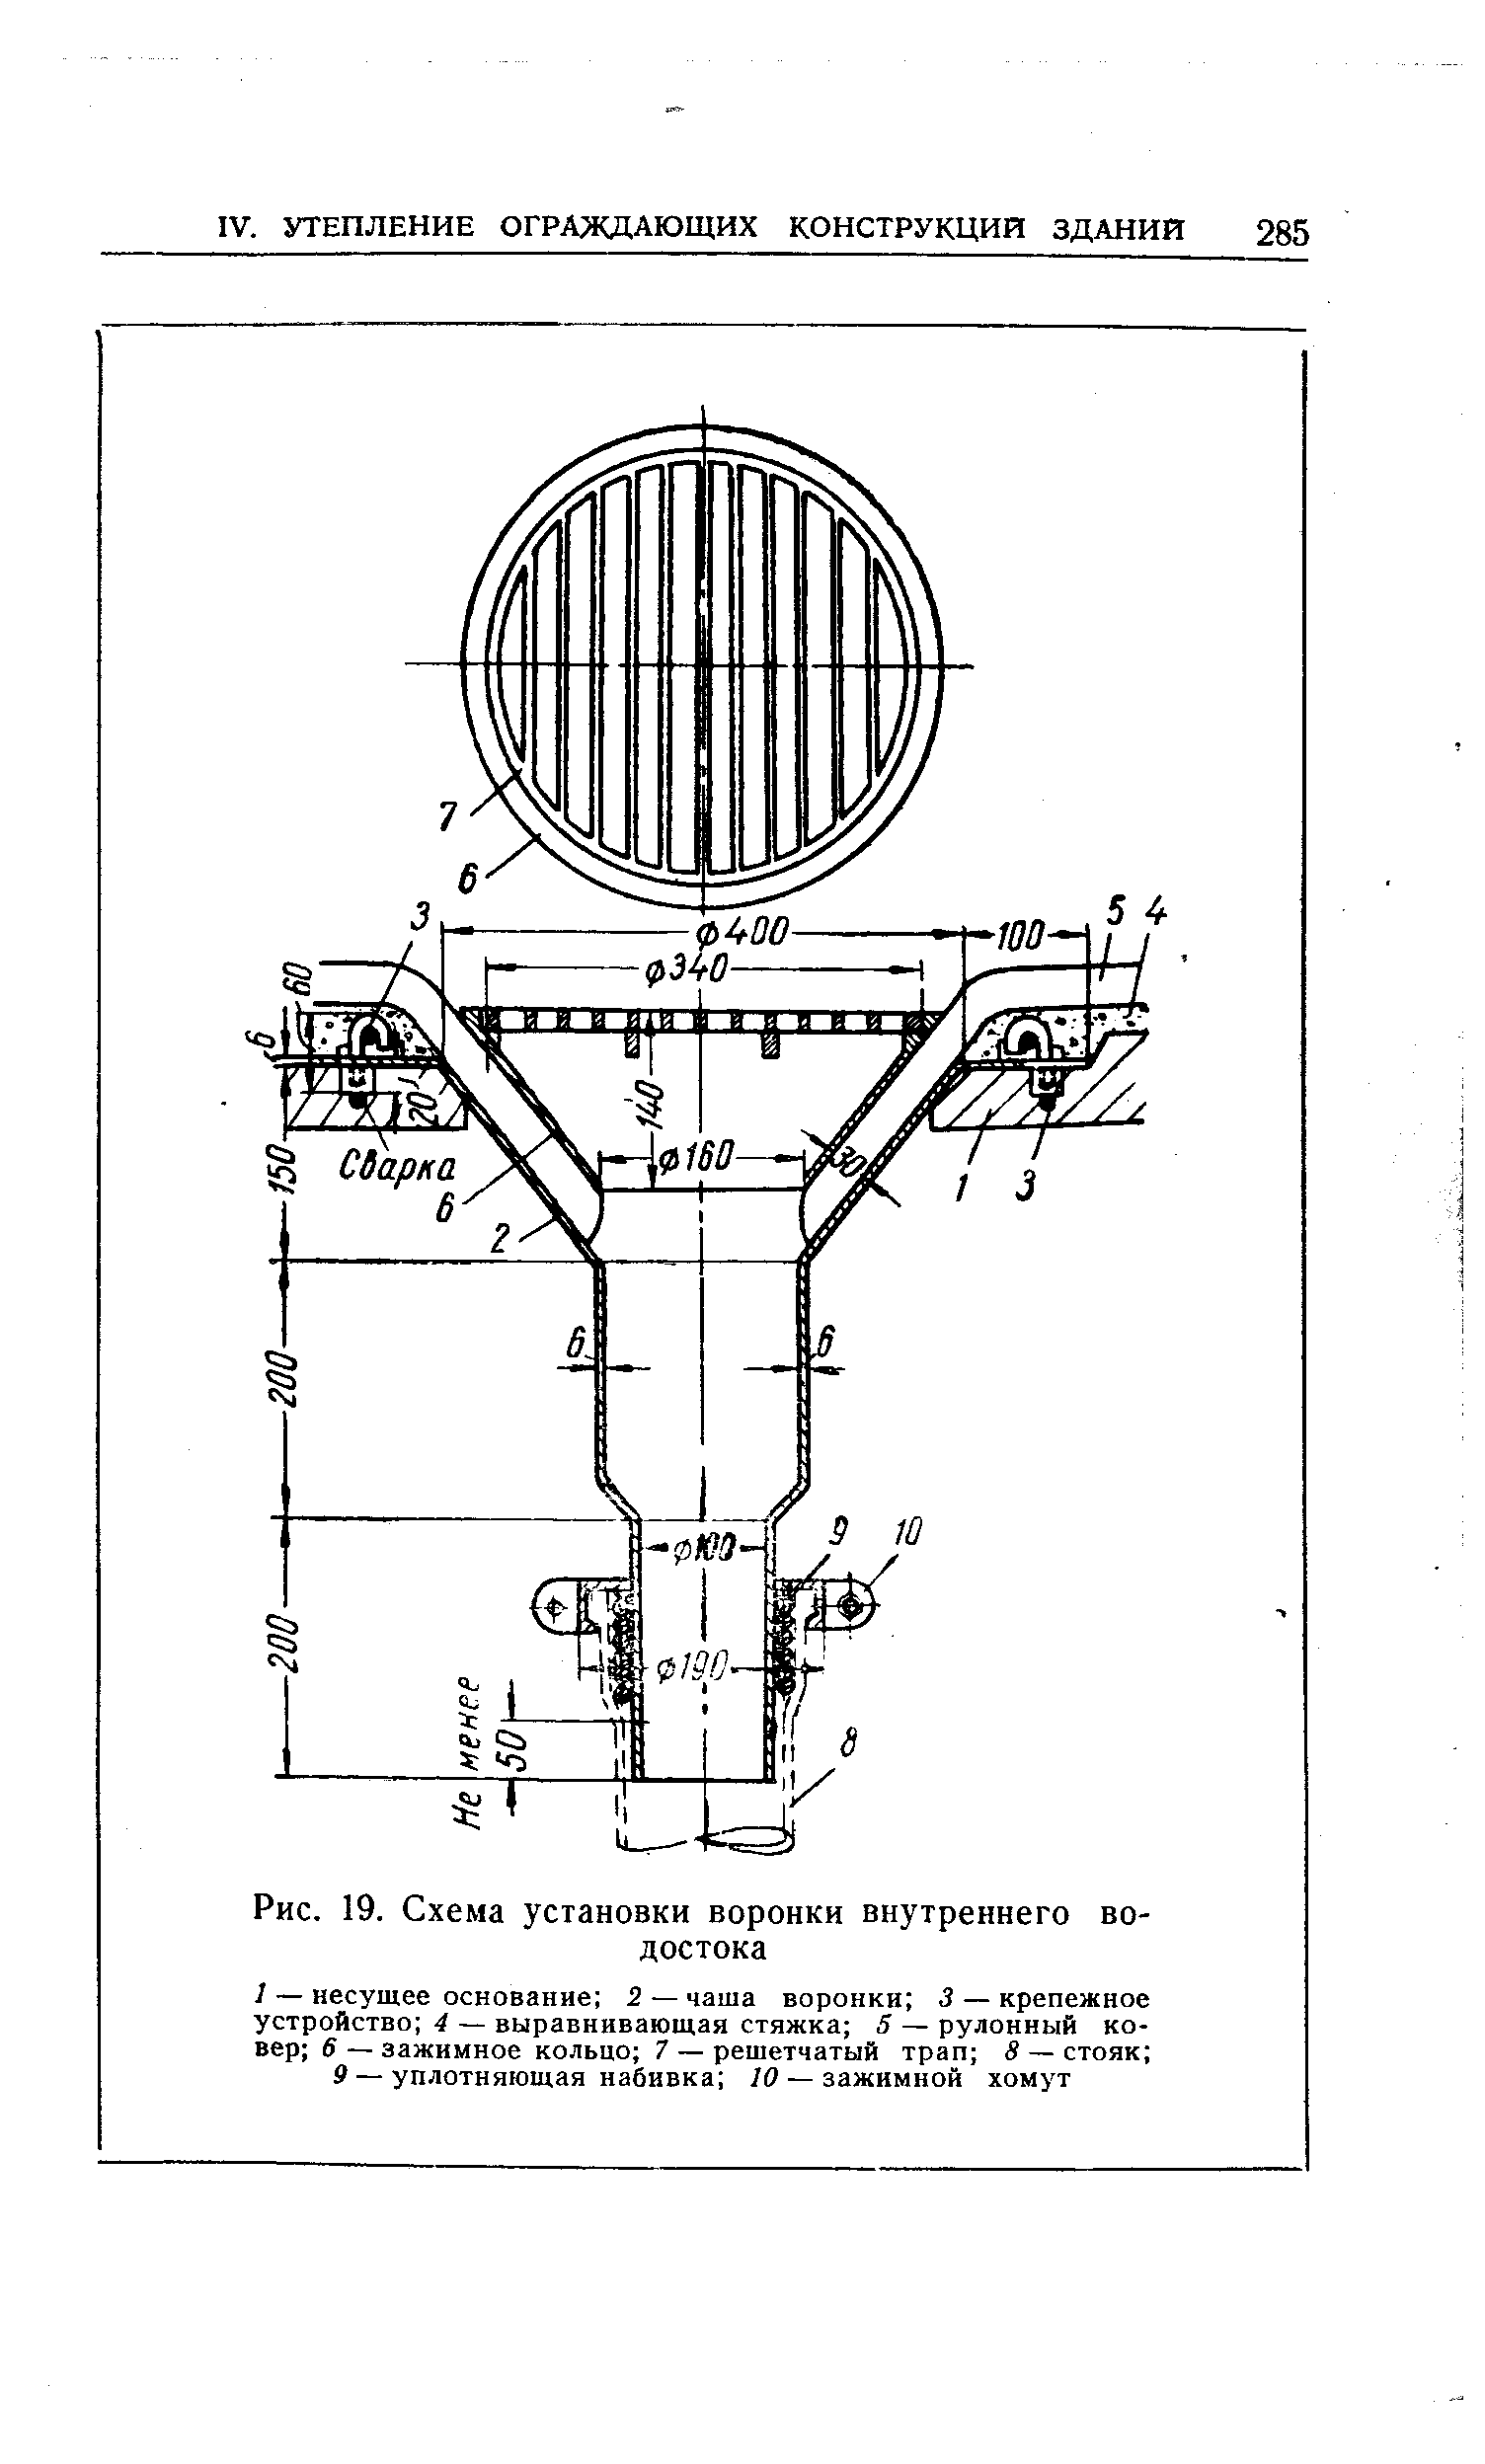 Рис. 19. Схема установки воронки внутреннего водостока
